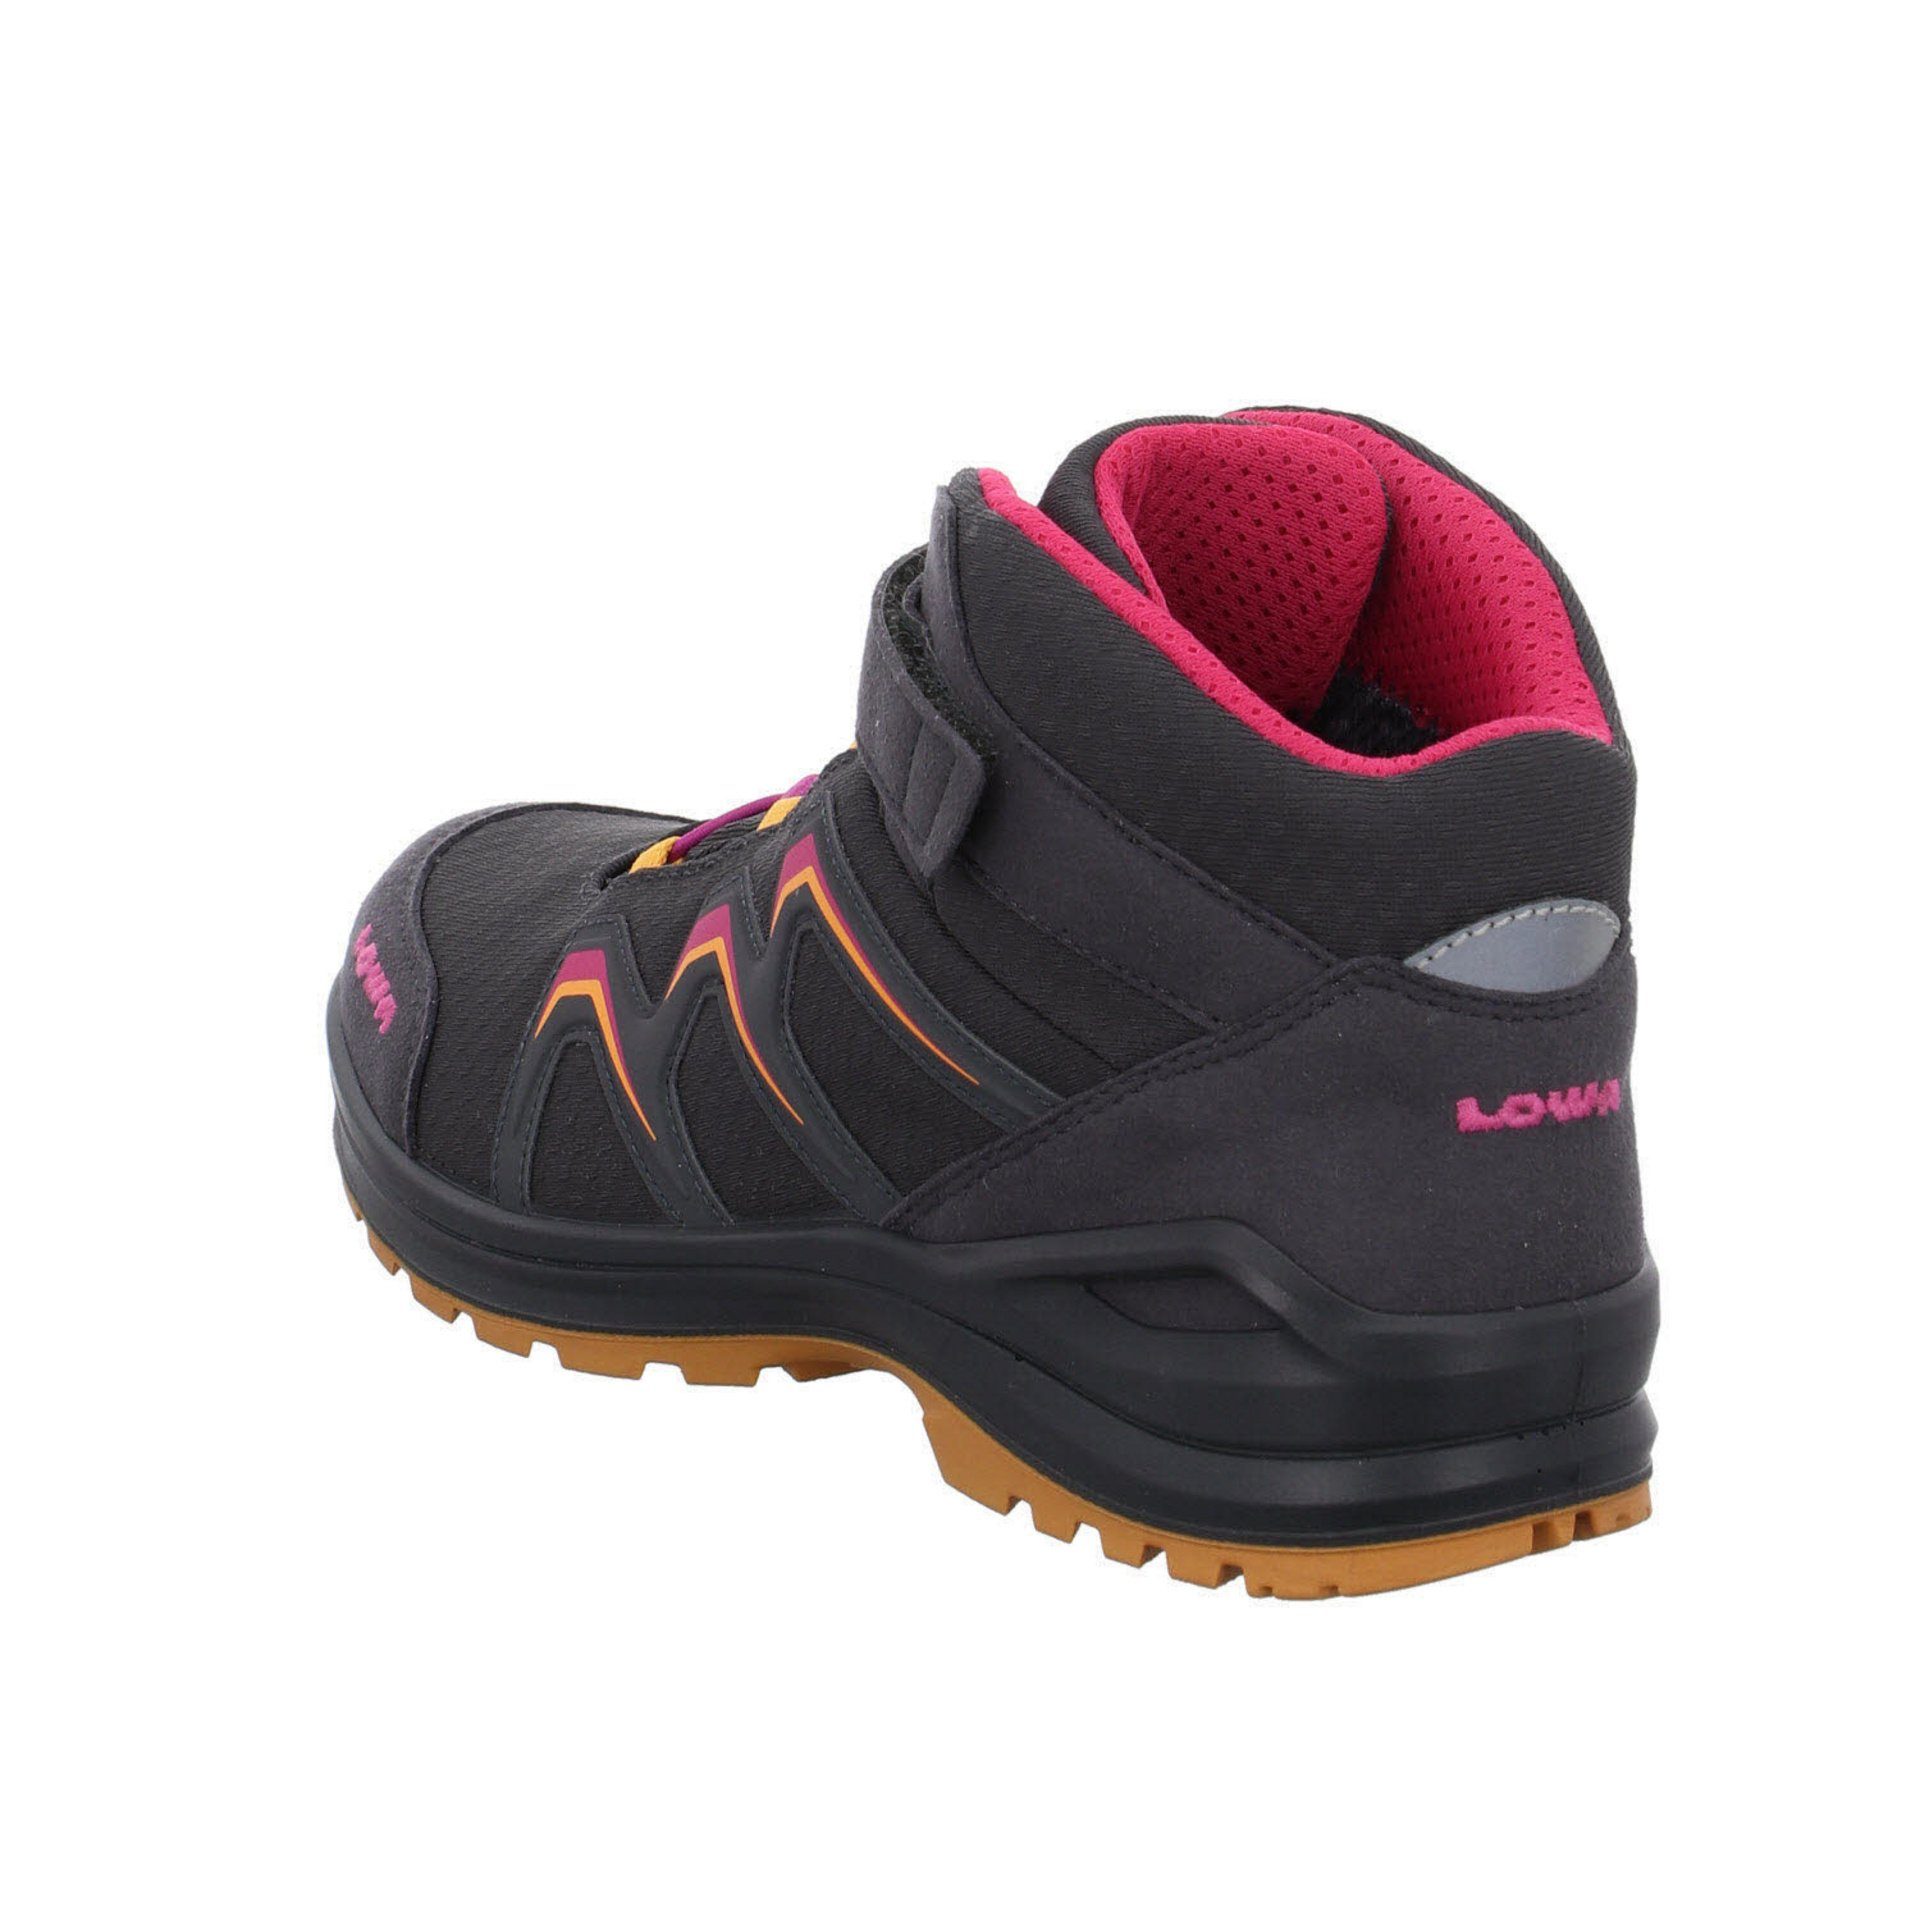 Schuhe Stiefel Maddox Jungen Boots GTX Lowa Warm GRAPHIT/MANDARINE Textil Stiefel